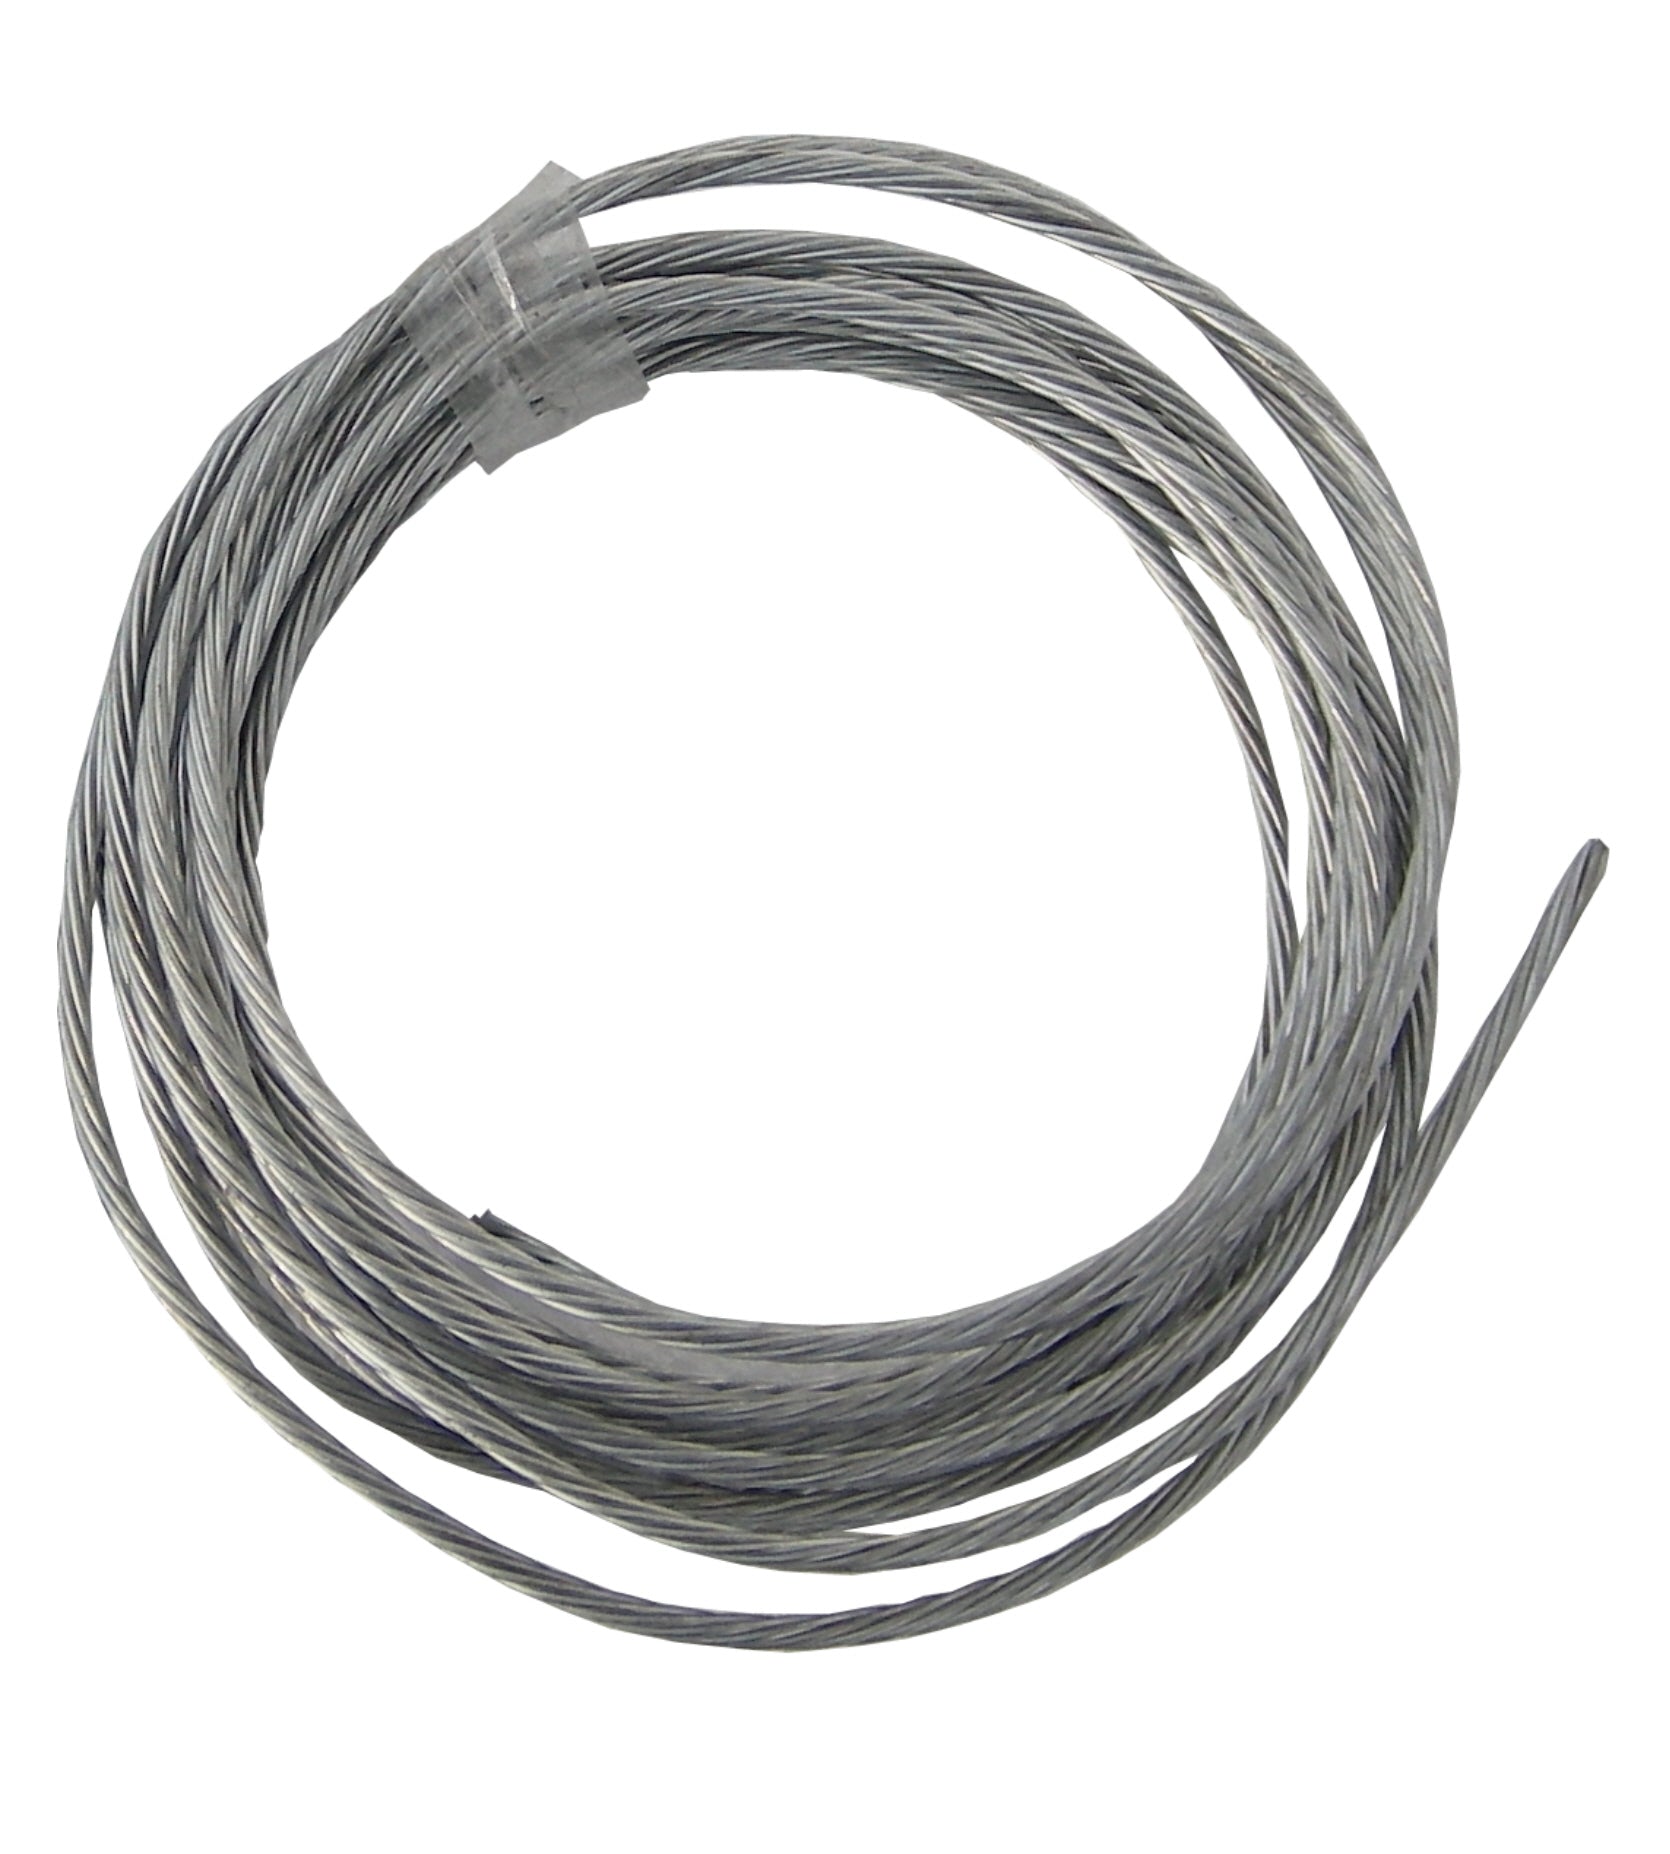 5m Lashing Wire